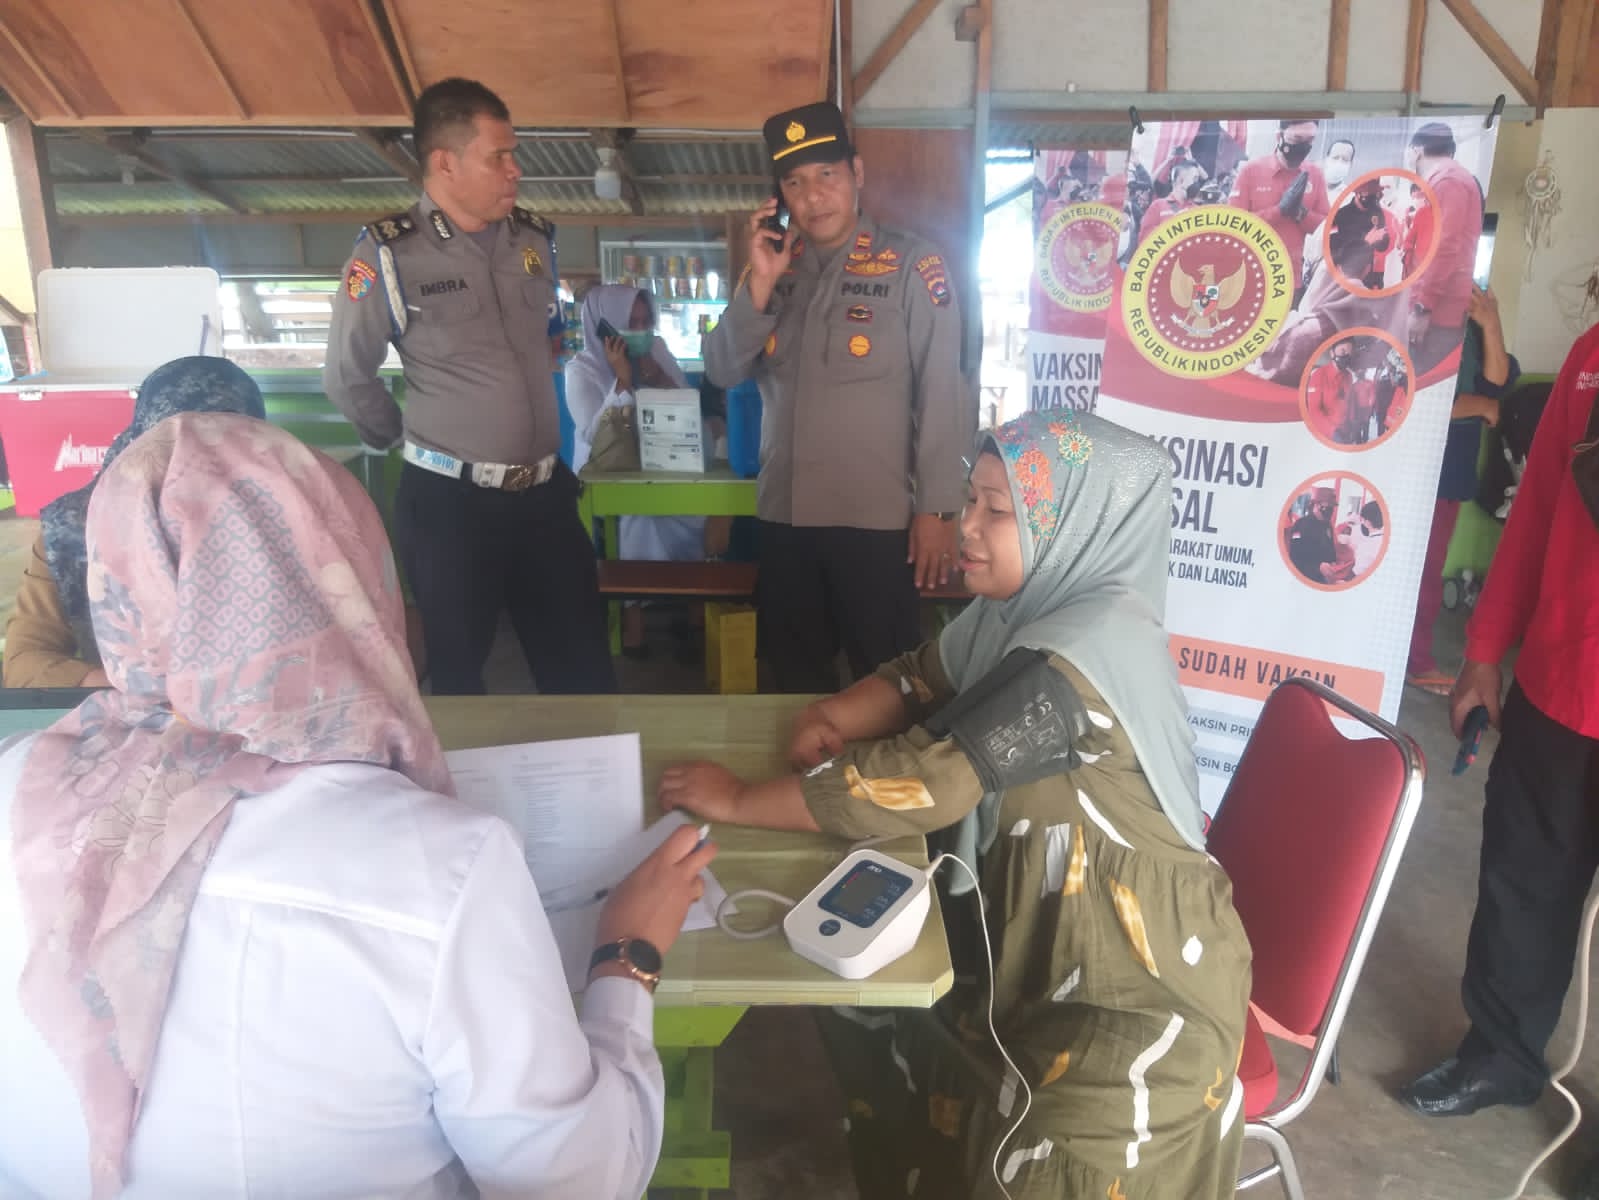 Puskesmas Surantih Melaksanakan Kegiatan gerai Vaksin bersama BIN (Badan Intelijen Negara) Padang